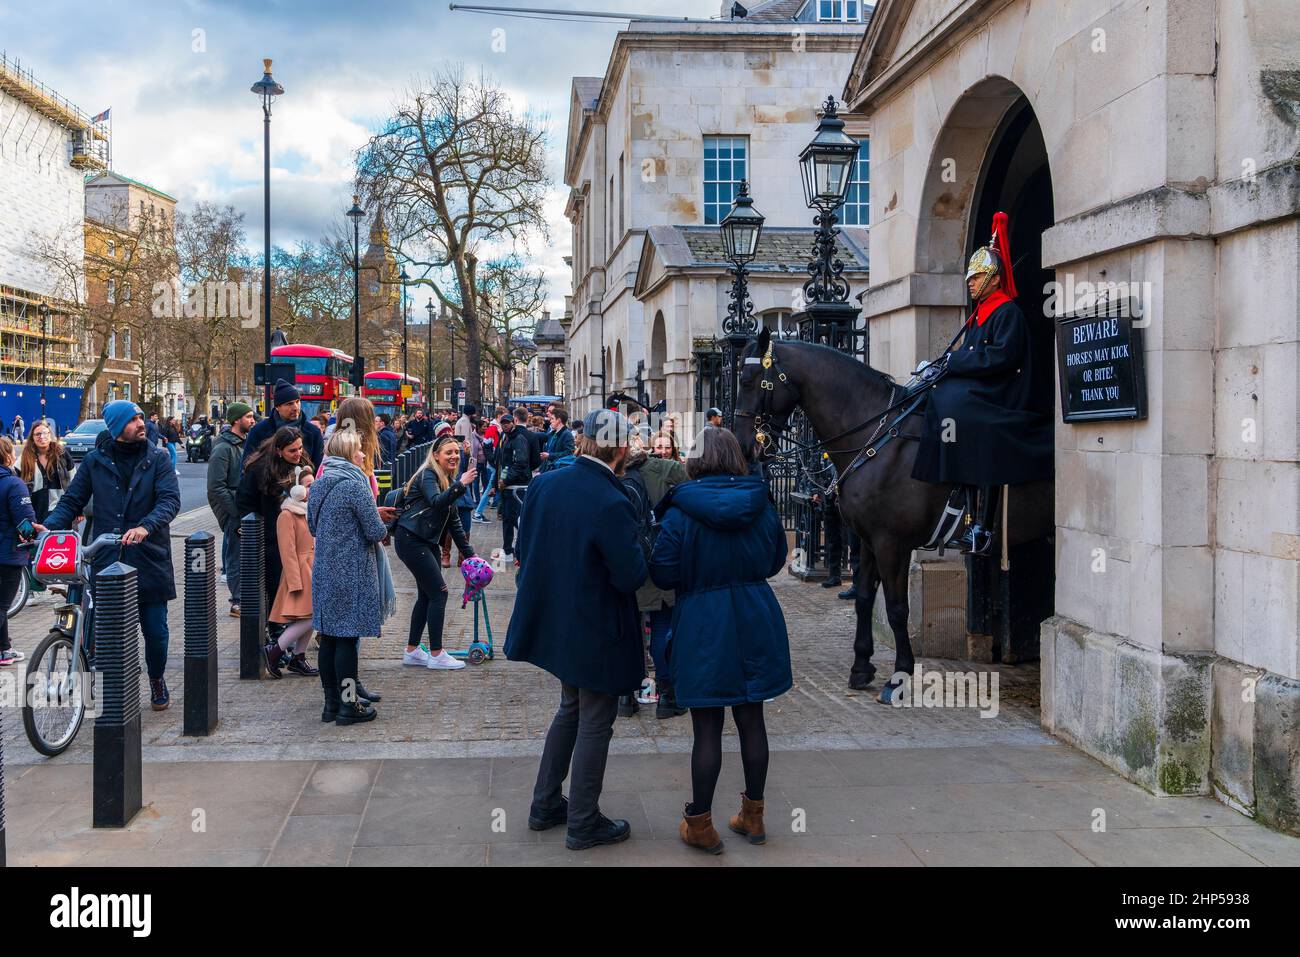 Eine einstehende Wache vor den Horse Guards in Whitehall, London, Großbritannien, Europa. Stockfoto